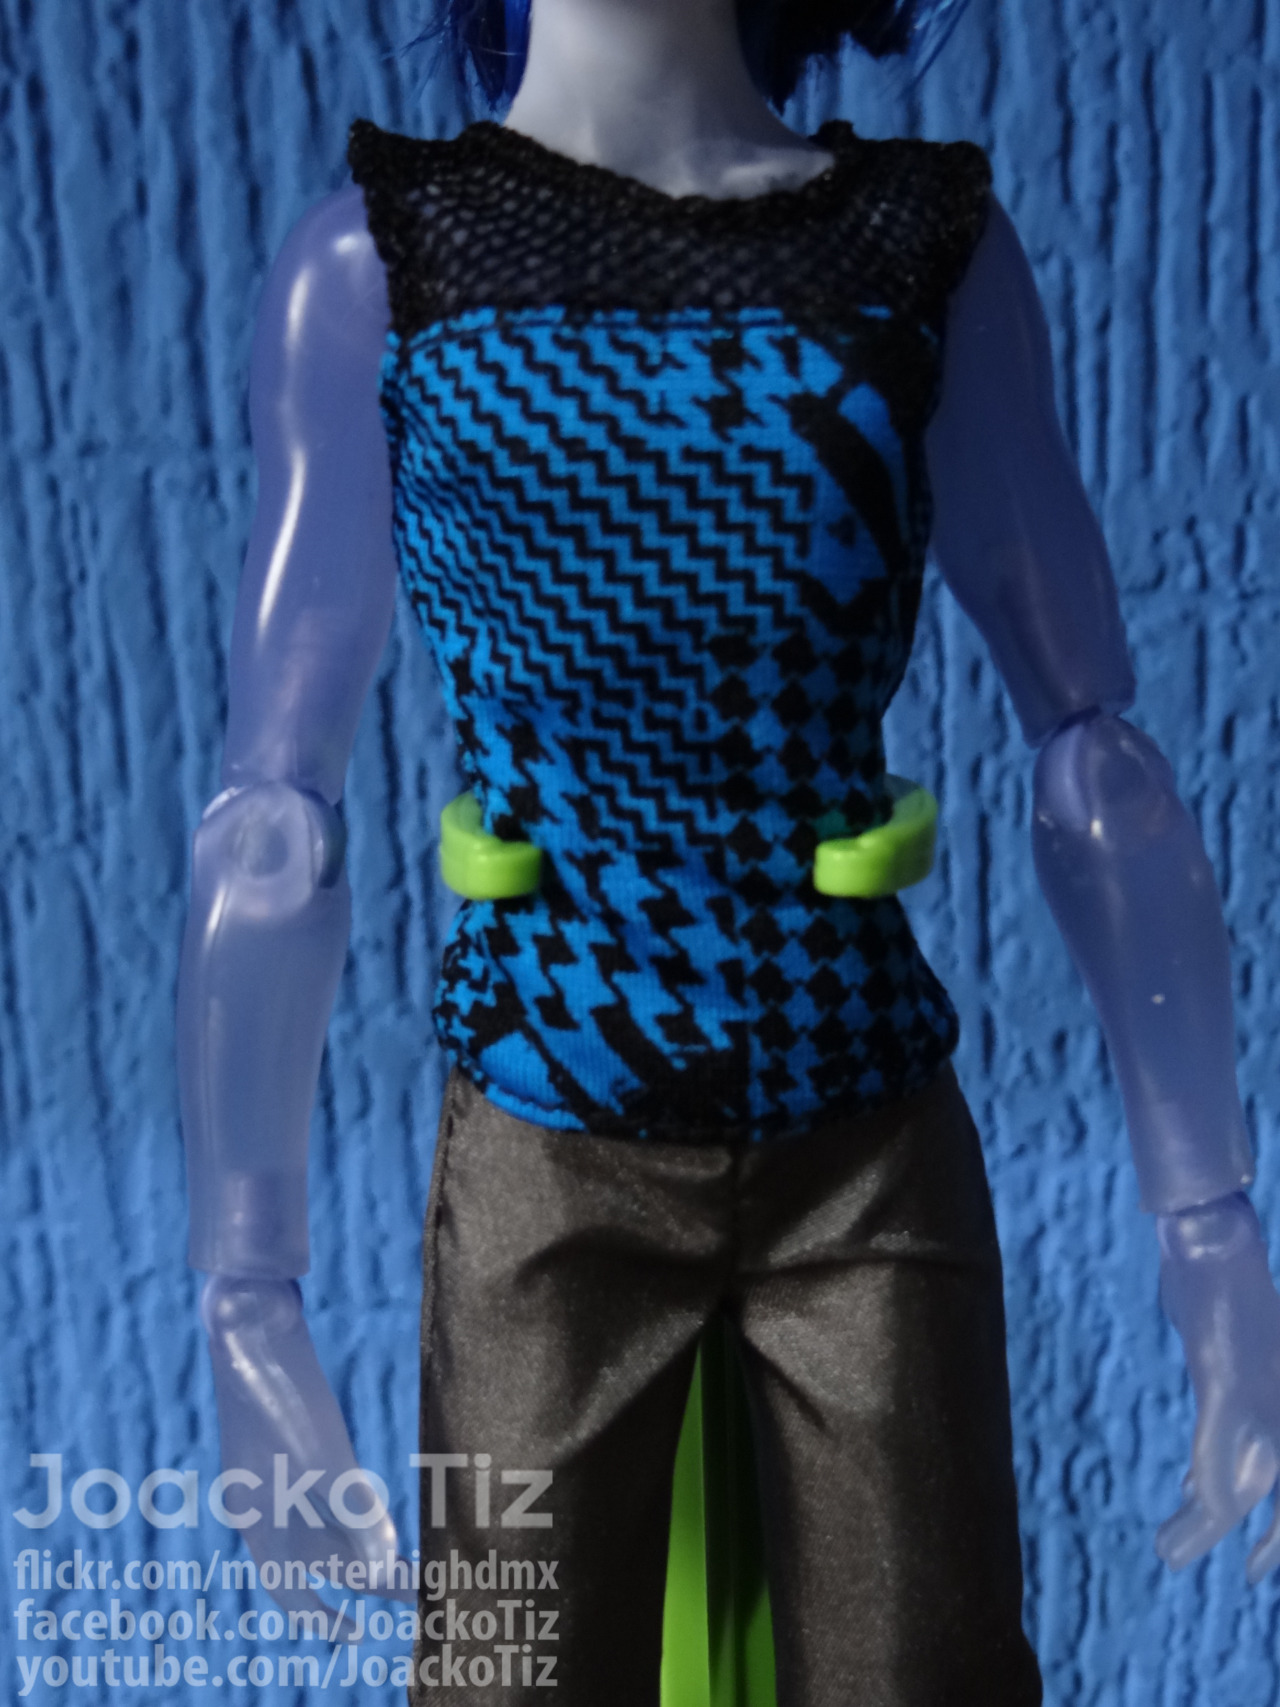 joackotiz:

Invisi Billy (New type of body) Monster High Maul Monsteristas 5 Pack